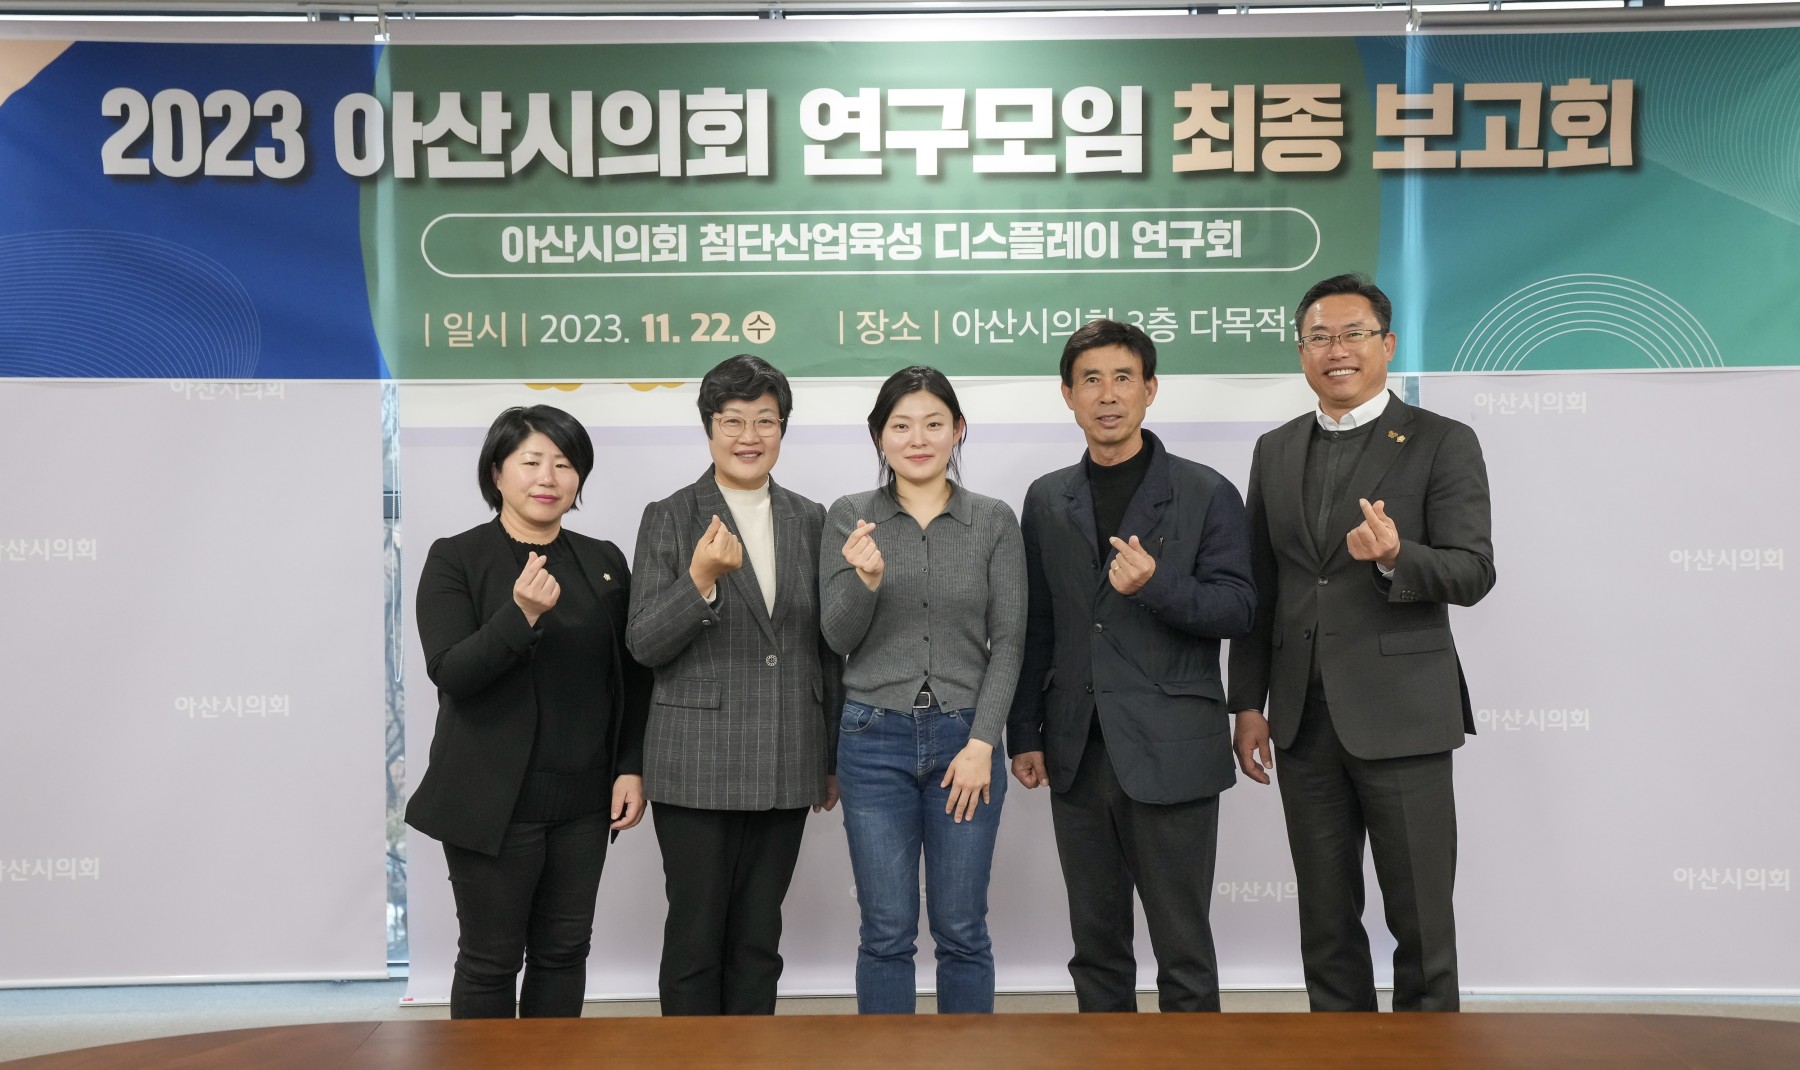 아산시의회 첨단산업육성 연구회, 신성장동력 기반 디스플레이 연구 최종 보고회 개최